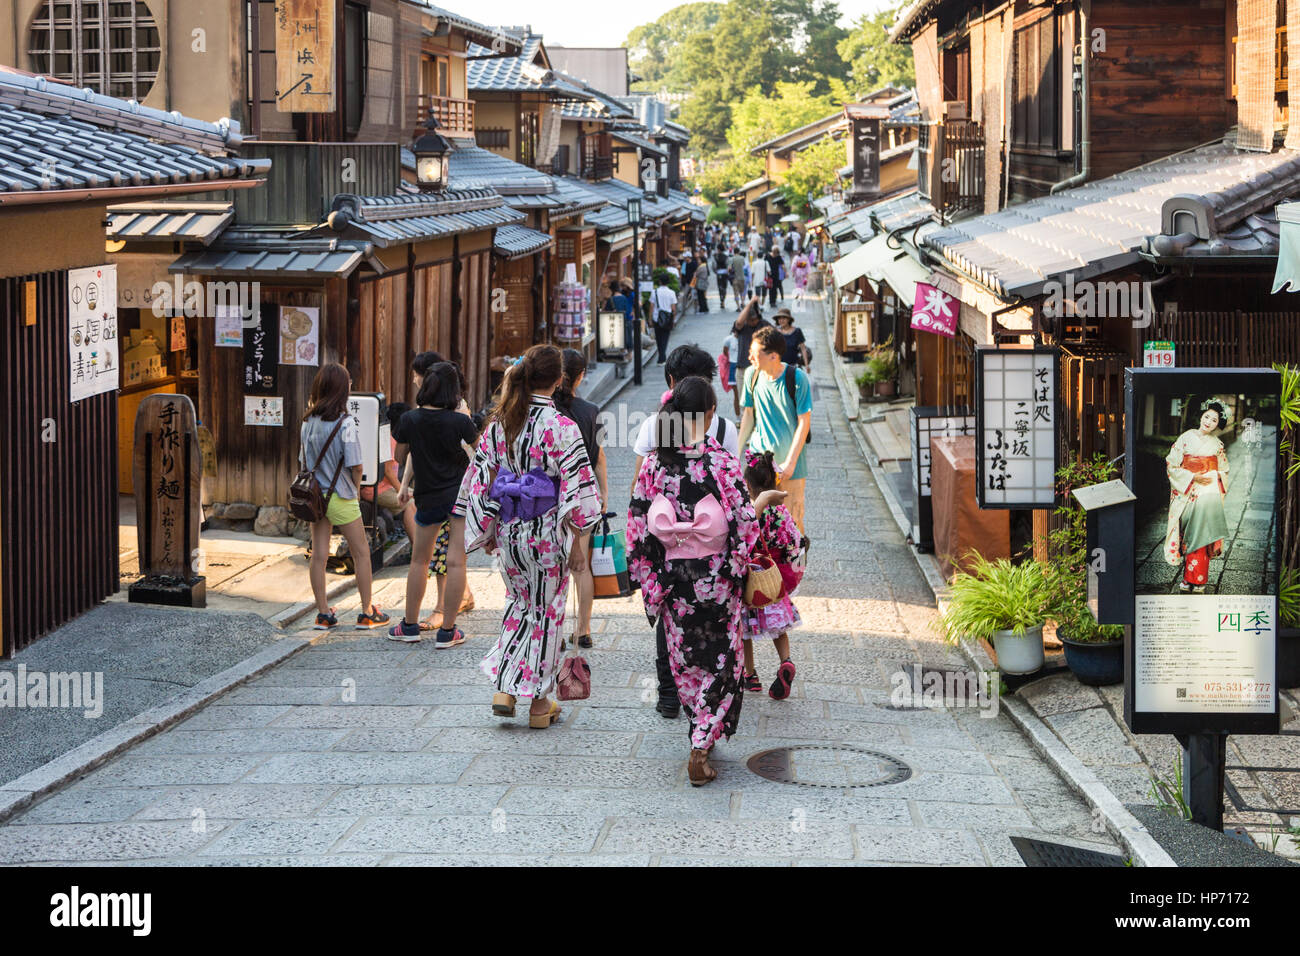 KYOTO, Japón - Agosto 11, 2015: mujeres jóvenes vistiendo kimono tradicional japonés caminando por las calles de Gion, la antigua ciudad de Kyoto en Japón. Foto de stock